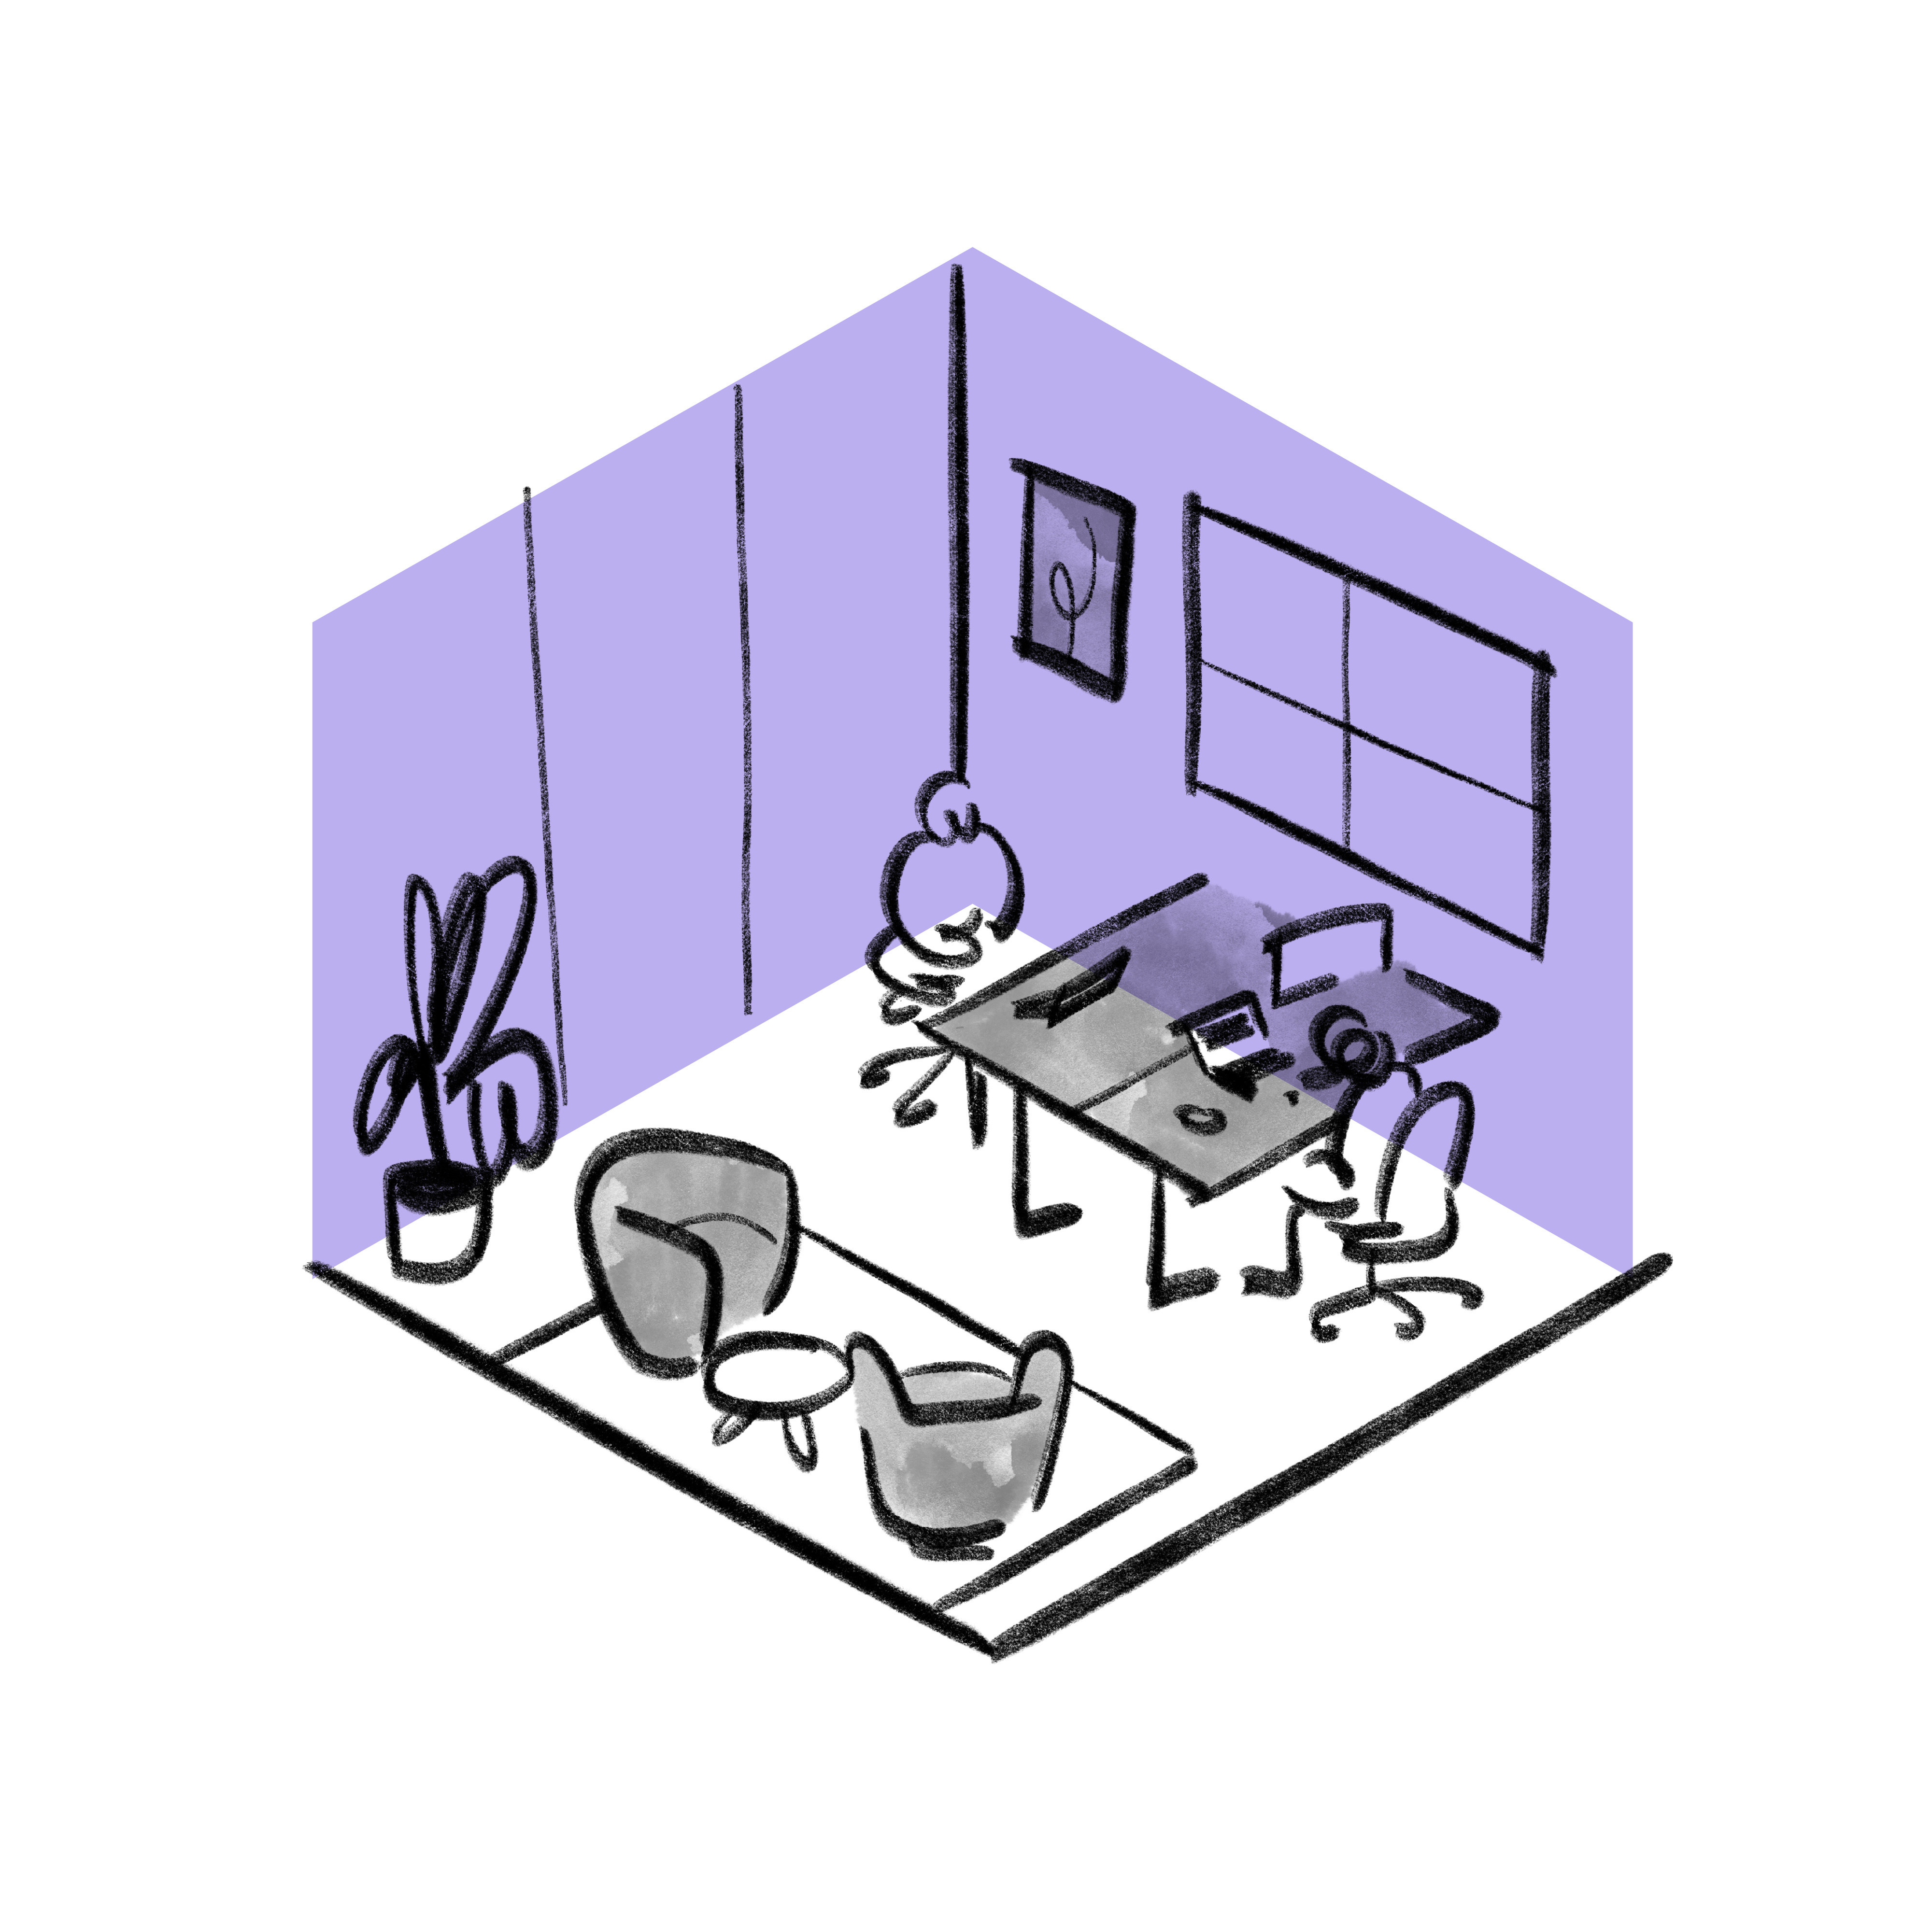 Espacio de trabajo-Oficina privada-RGB-Purple